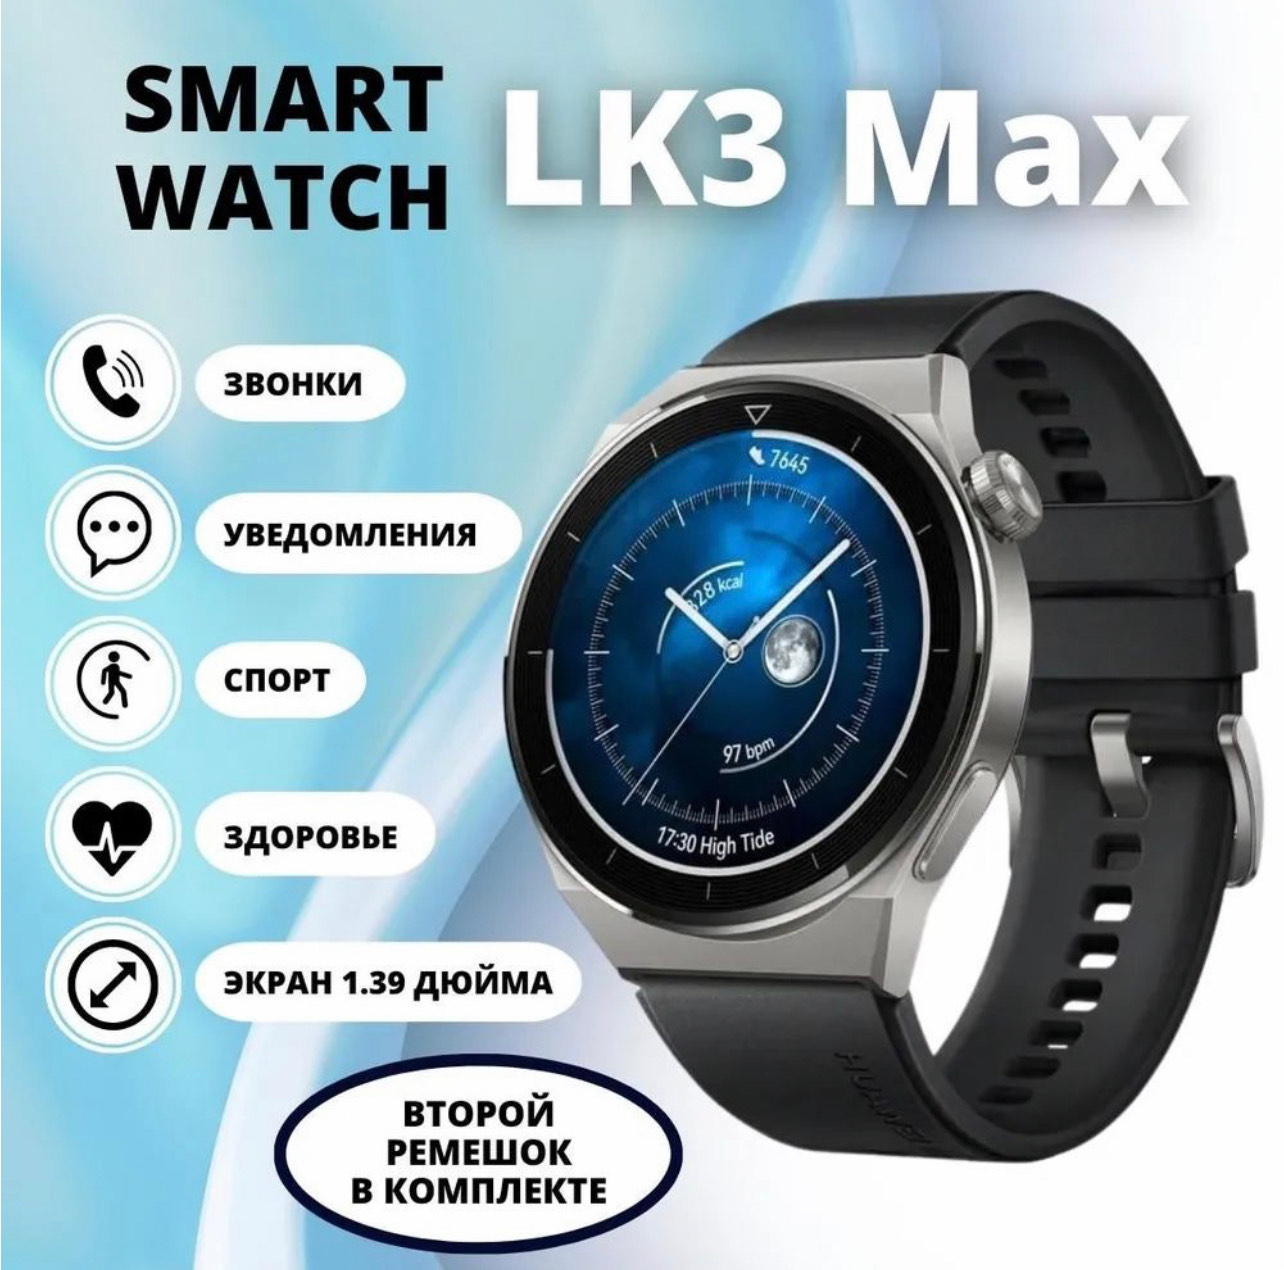 Часы LK. Умные часы lk9 Mini. Смарт часы LK 3 отзыв. Приложение для смарт часов LK Ultimate 2.